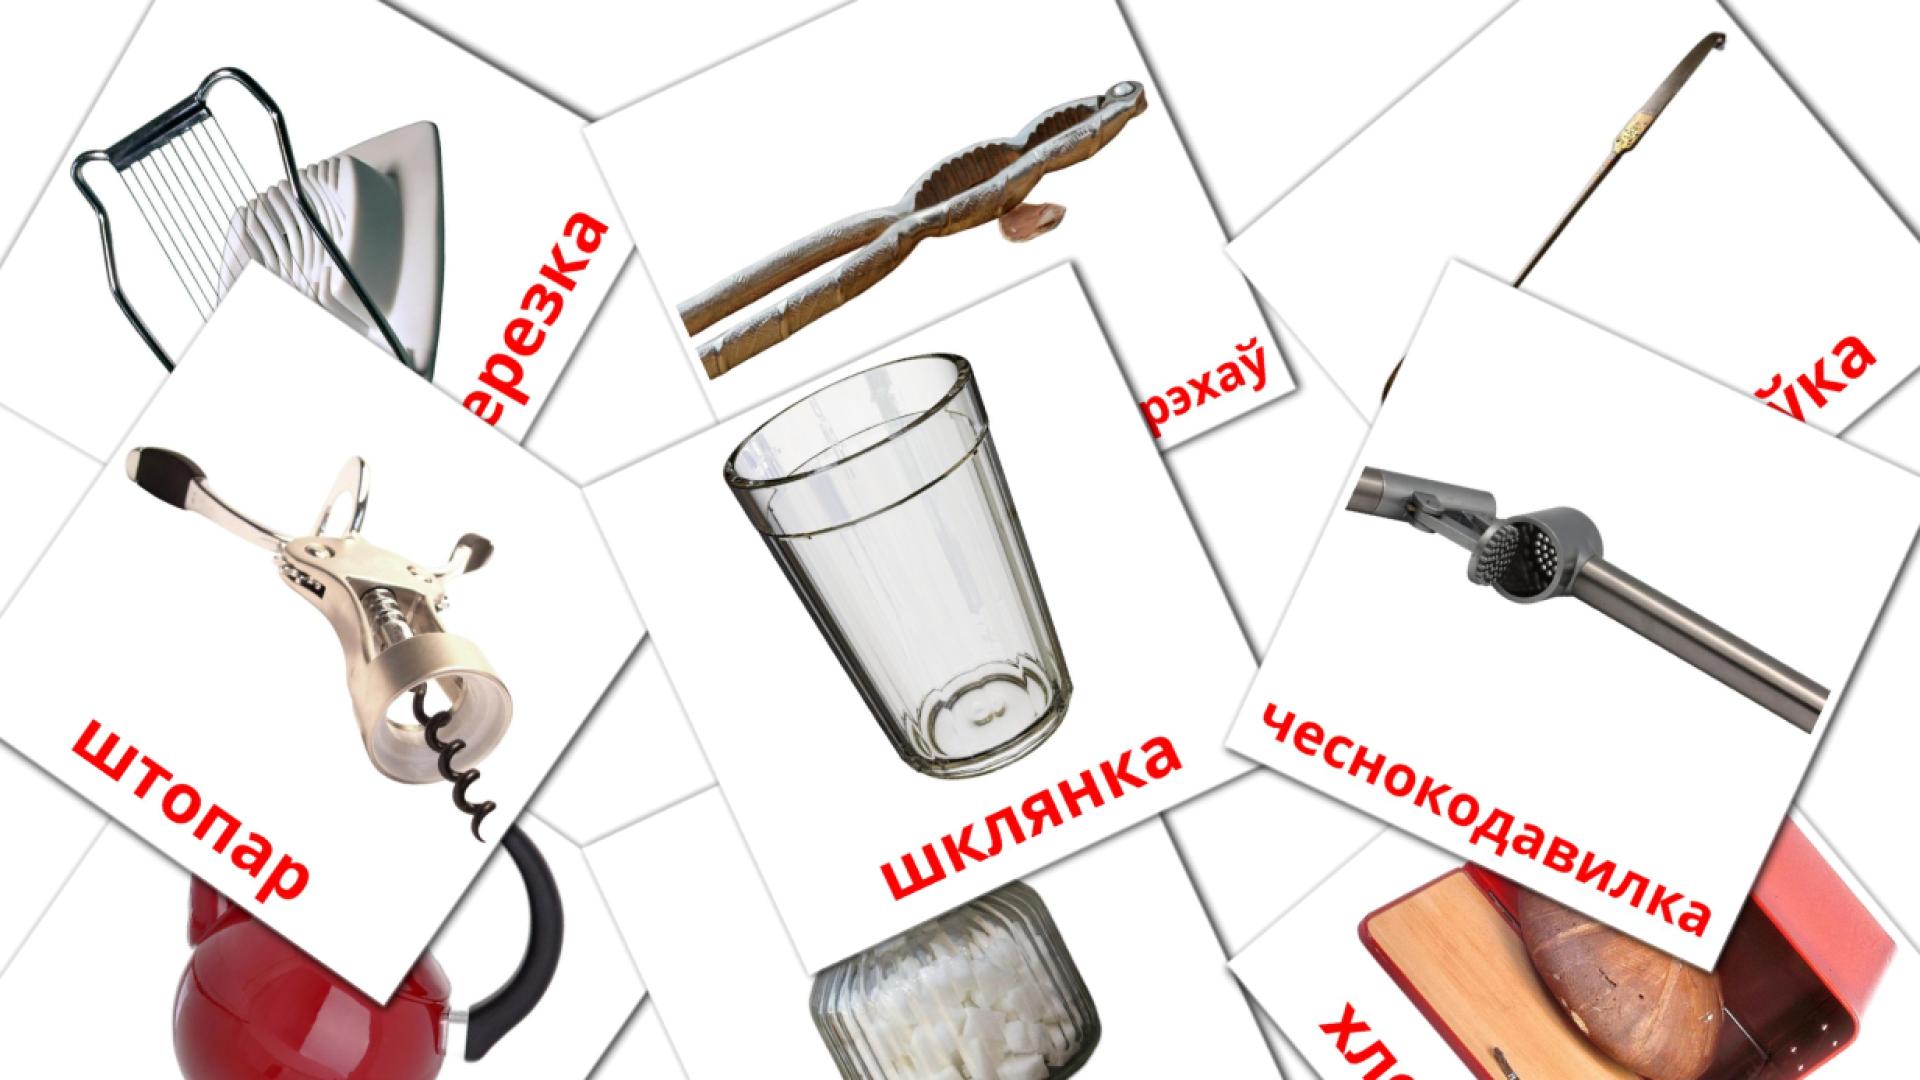 Weißrussisch Кухняe Vokabelkarteikarten